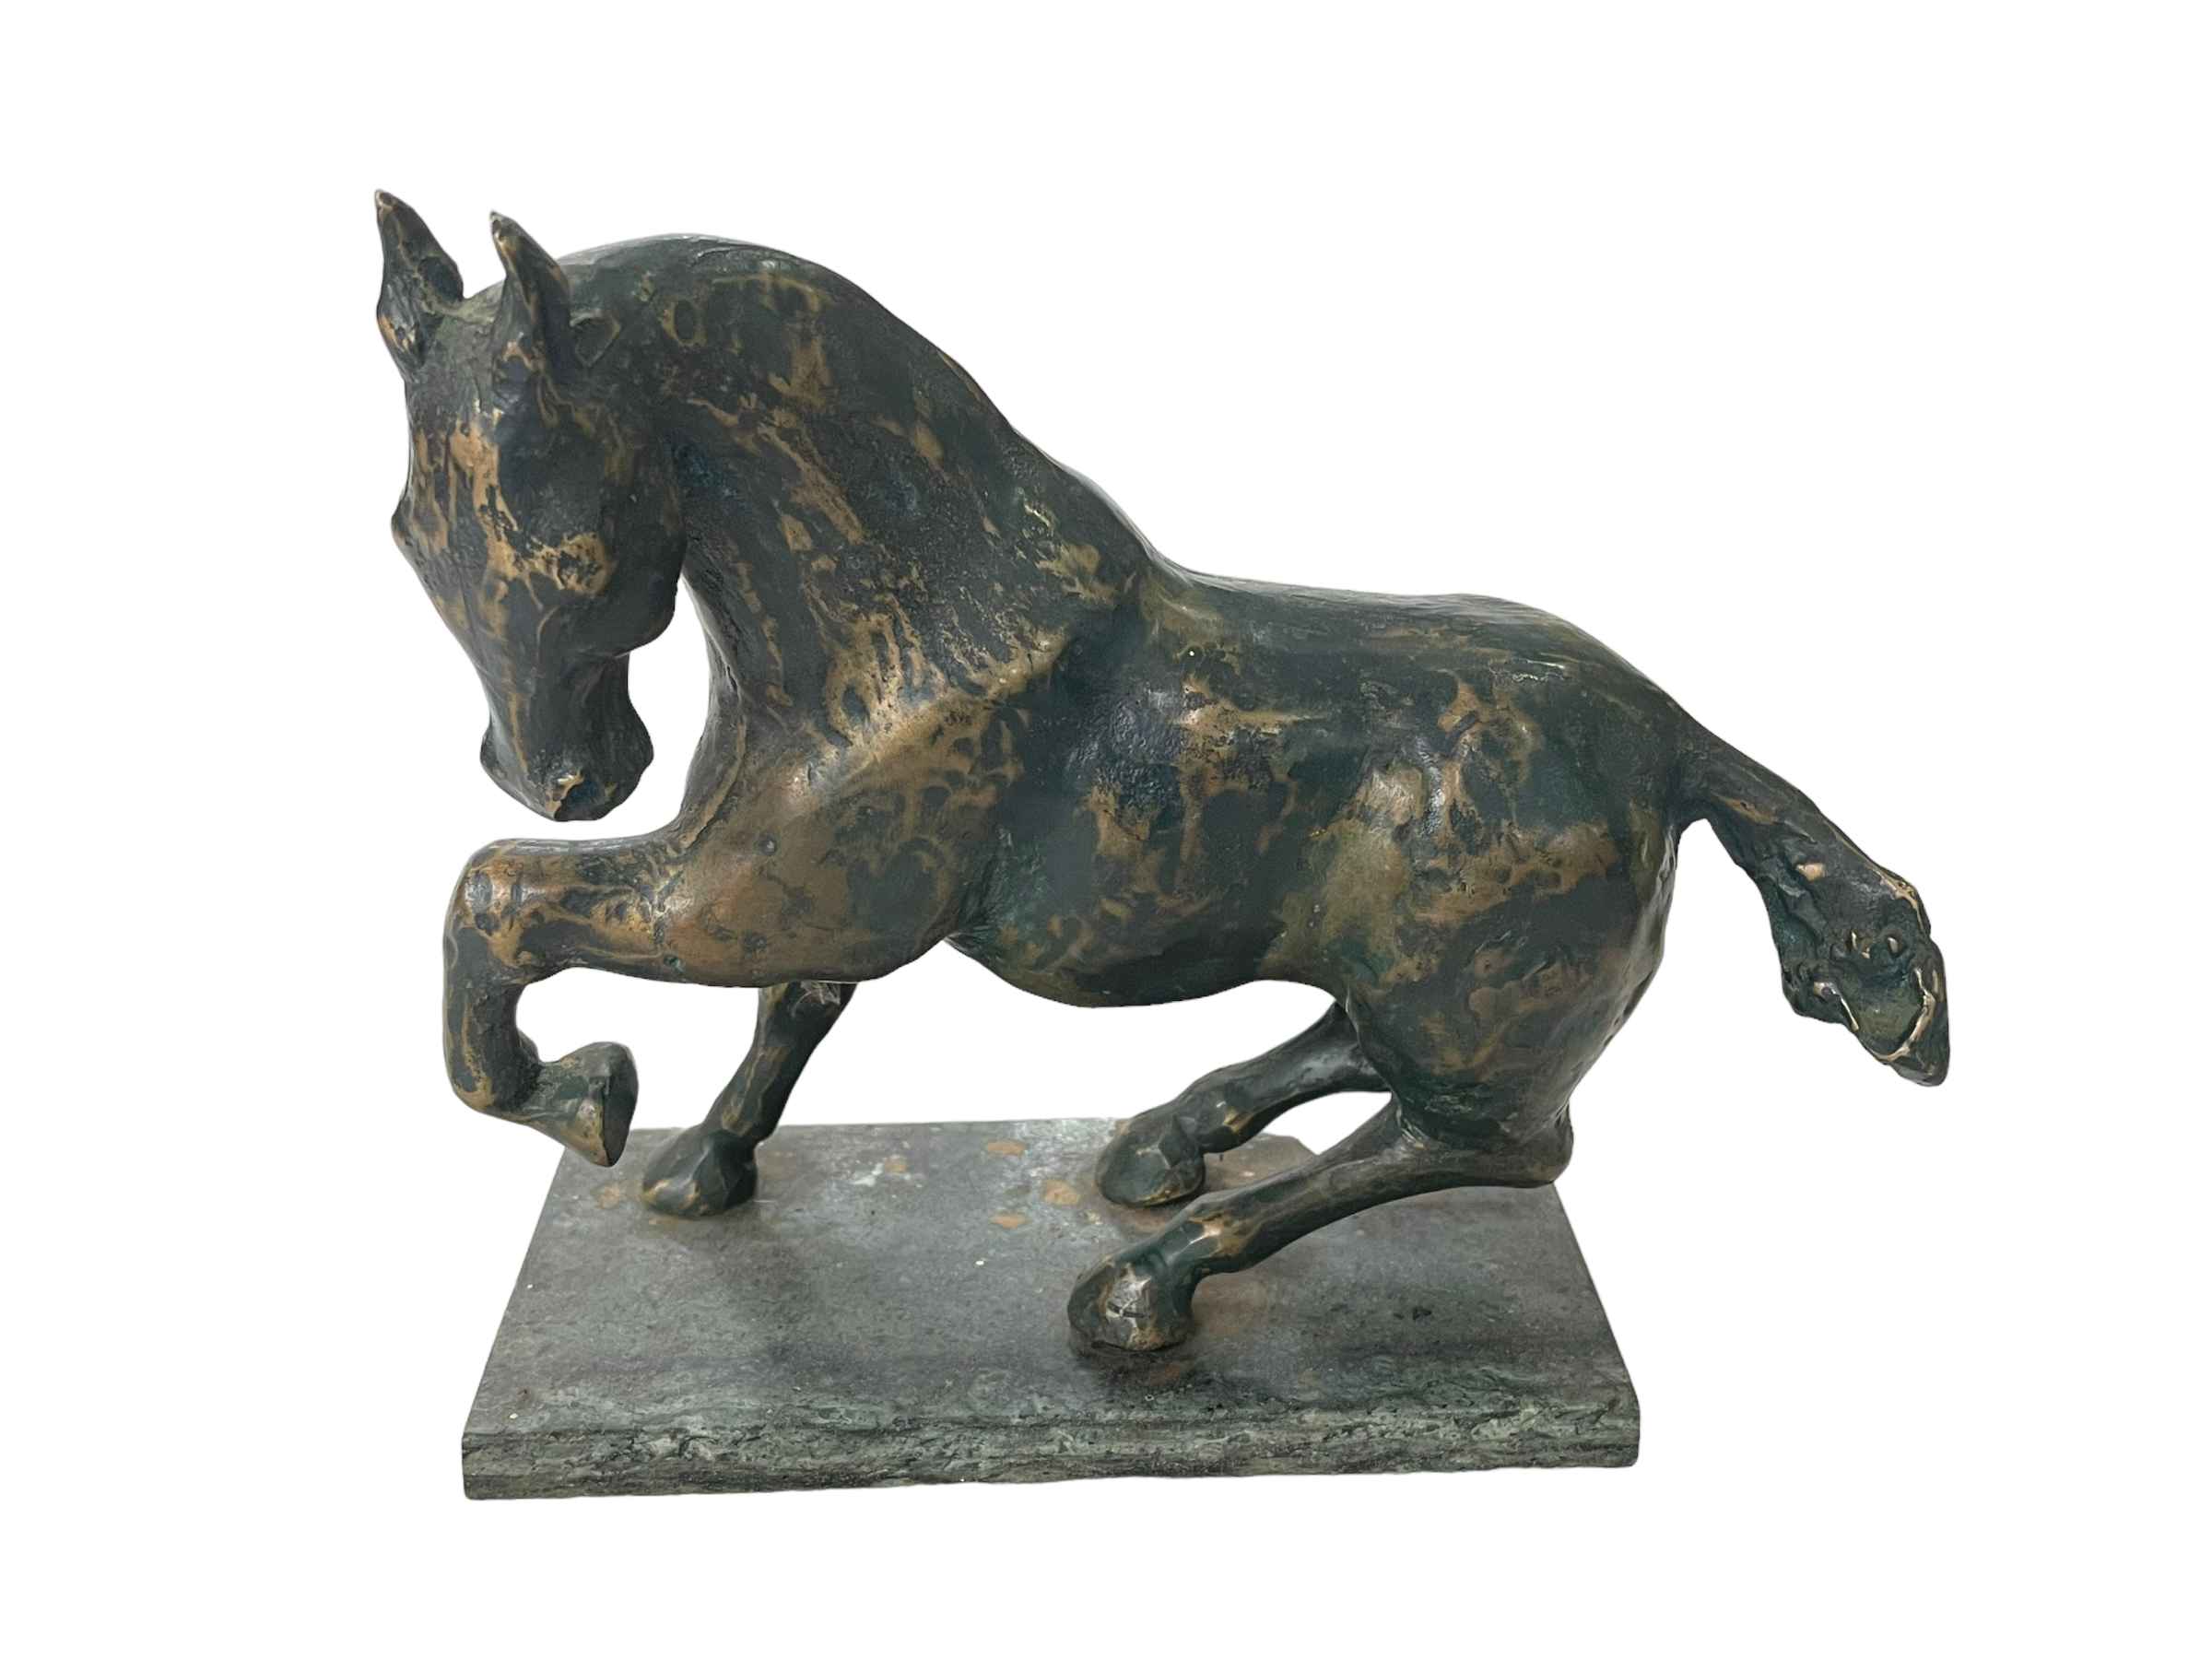 Bronzed horse sculpture on plinth base, 21.5cm.